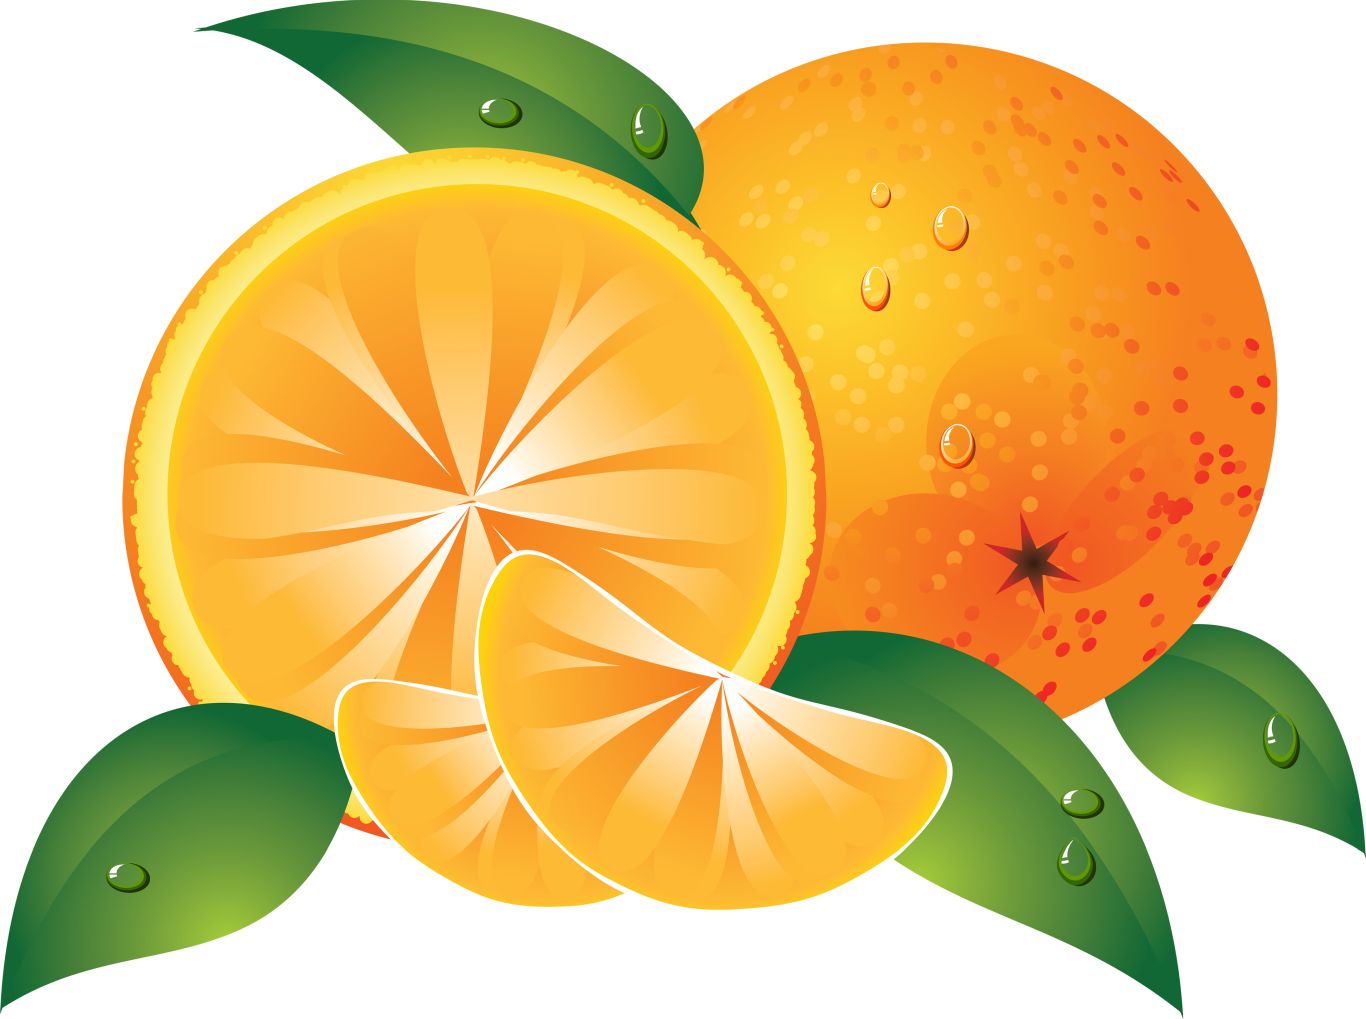 Oranges drawing PNG image    图片编号:763